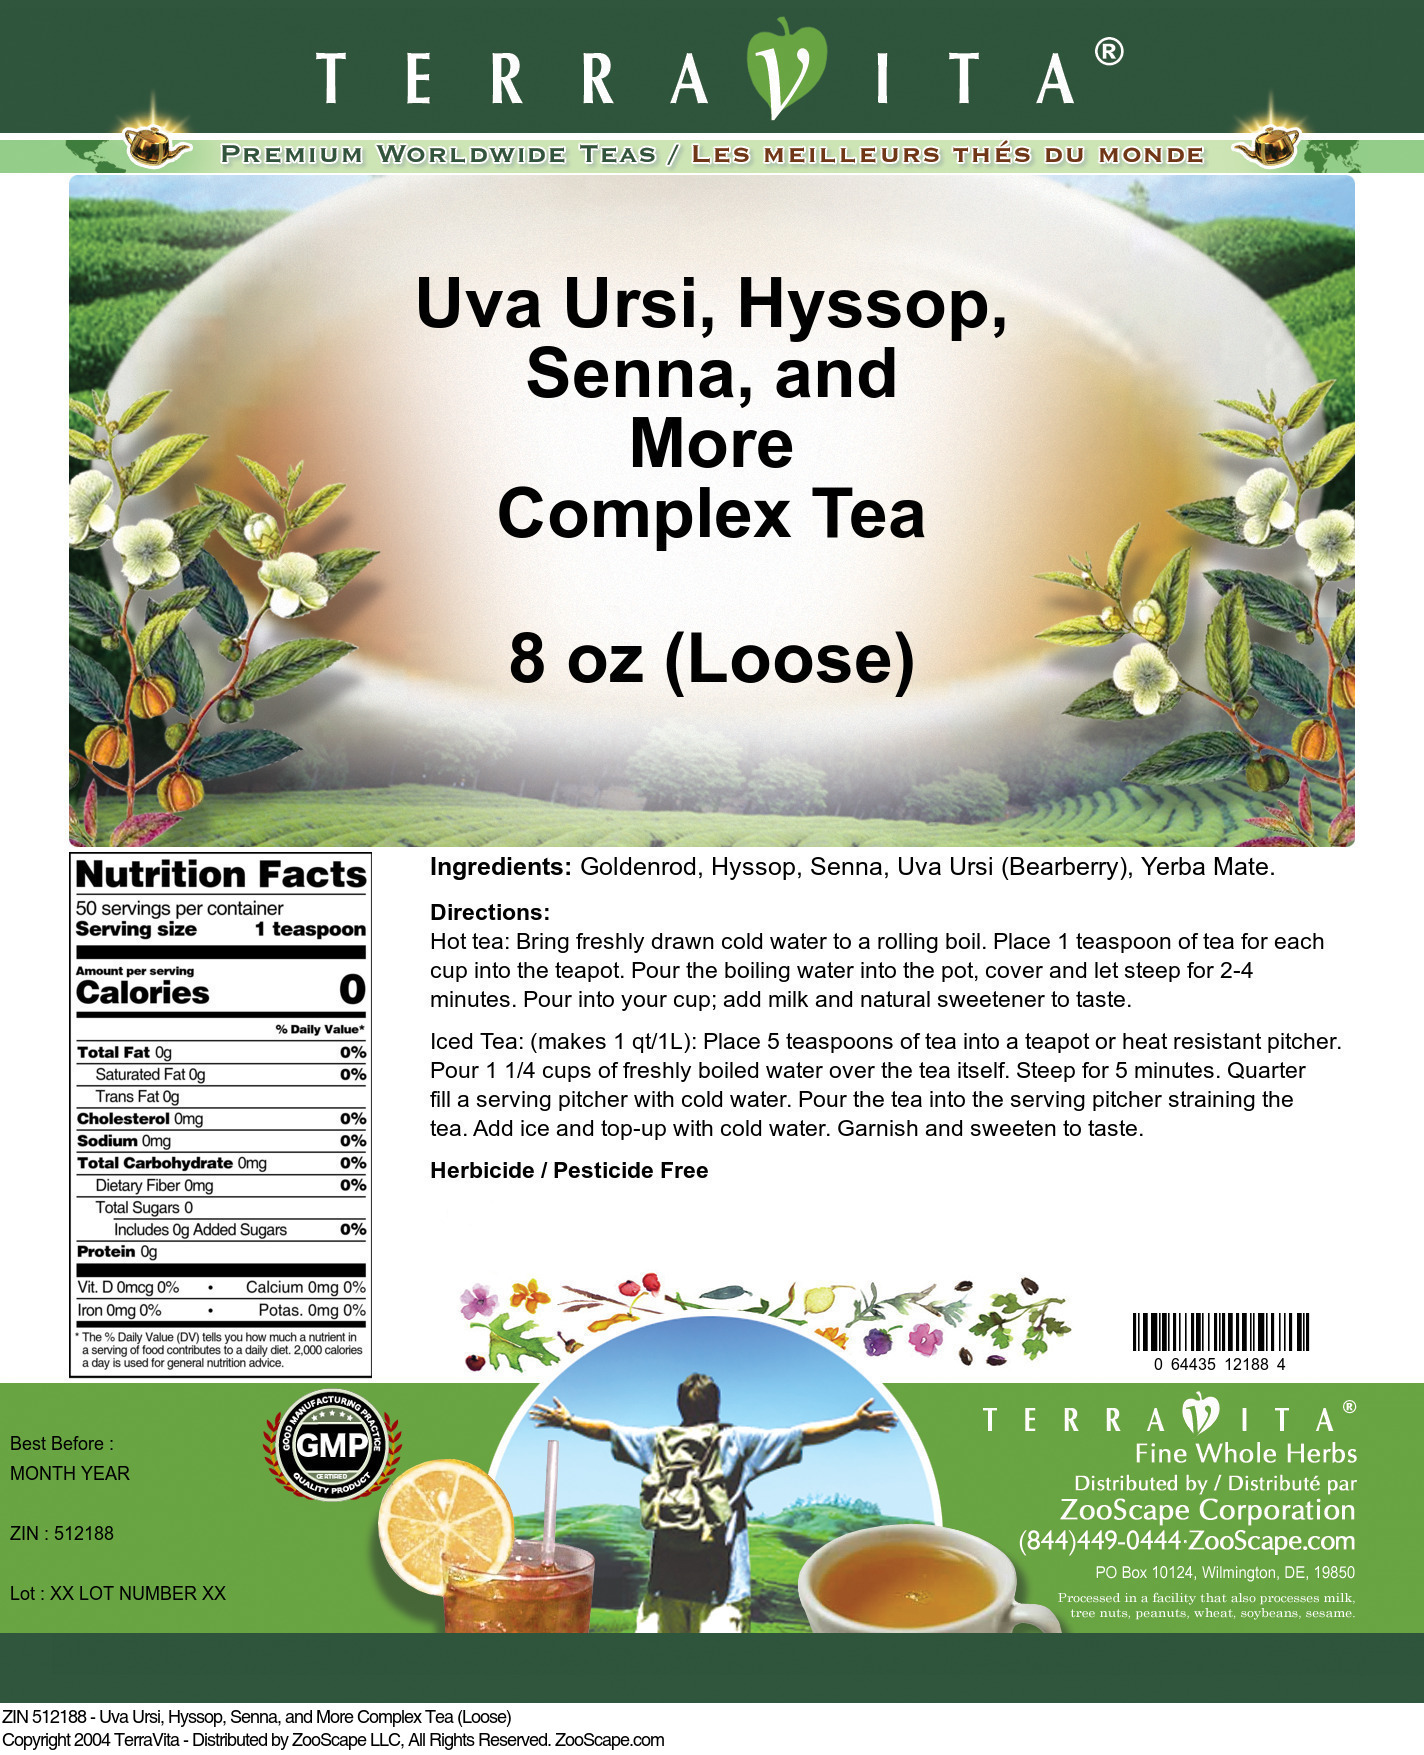 Uva Ursi, Hyssop, Senna, and More Complex Tea (Loose) - Label